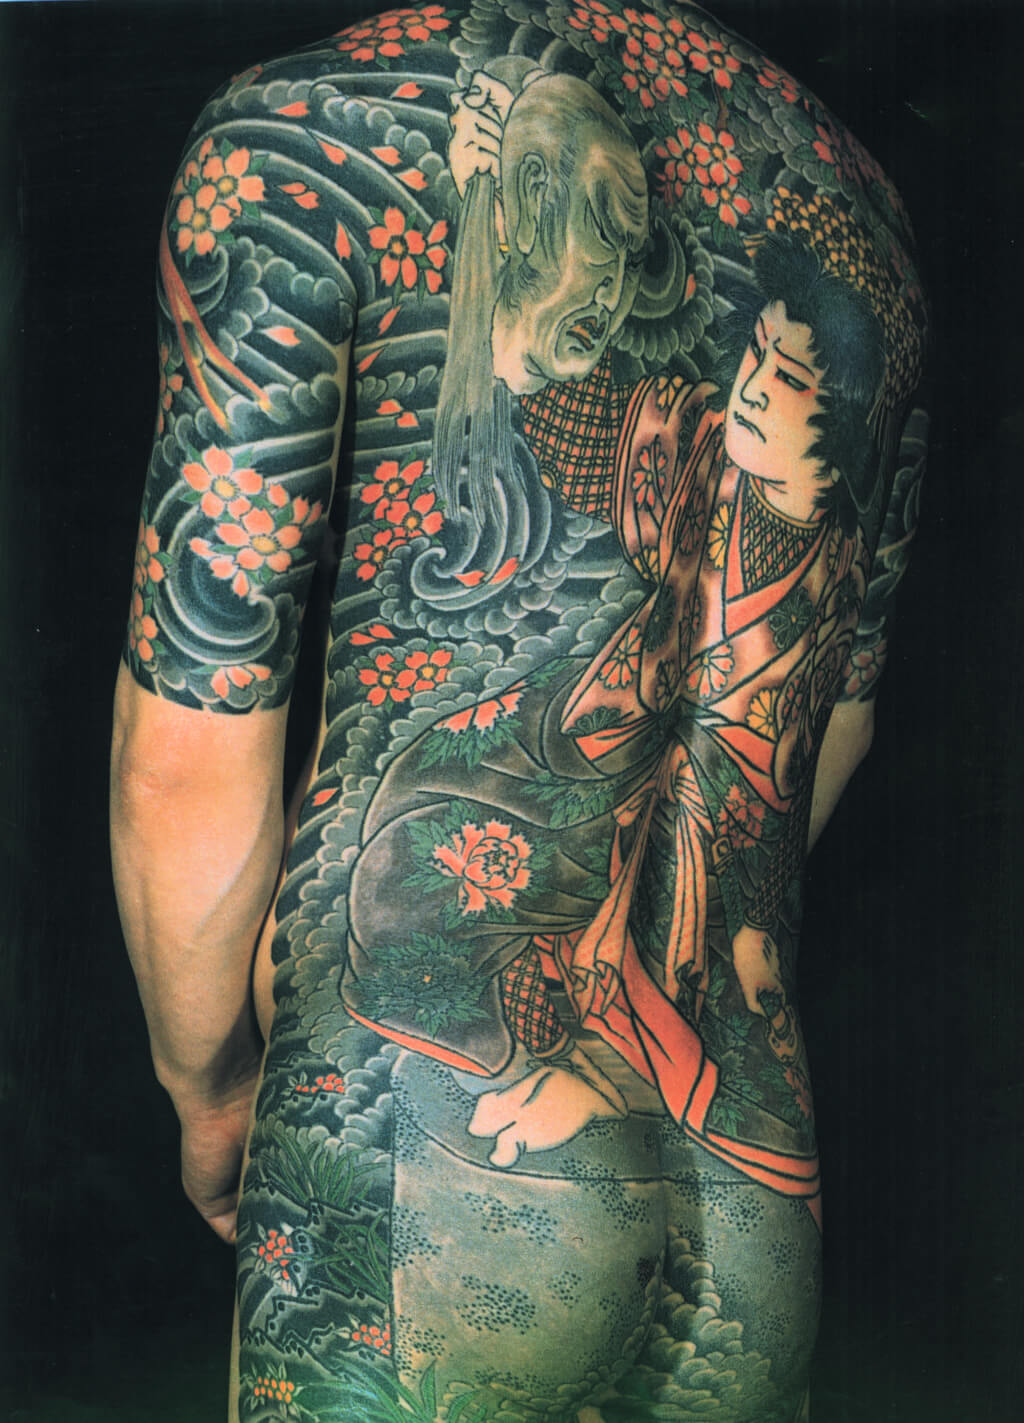 Yakuza Tattoo Full Body Graphic · Creative Fabrica